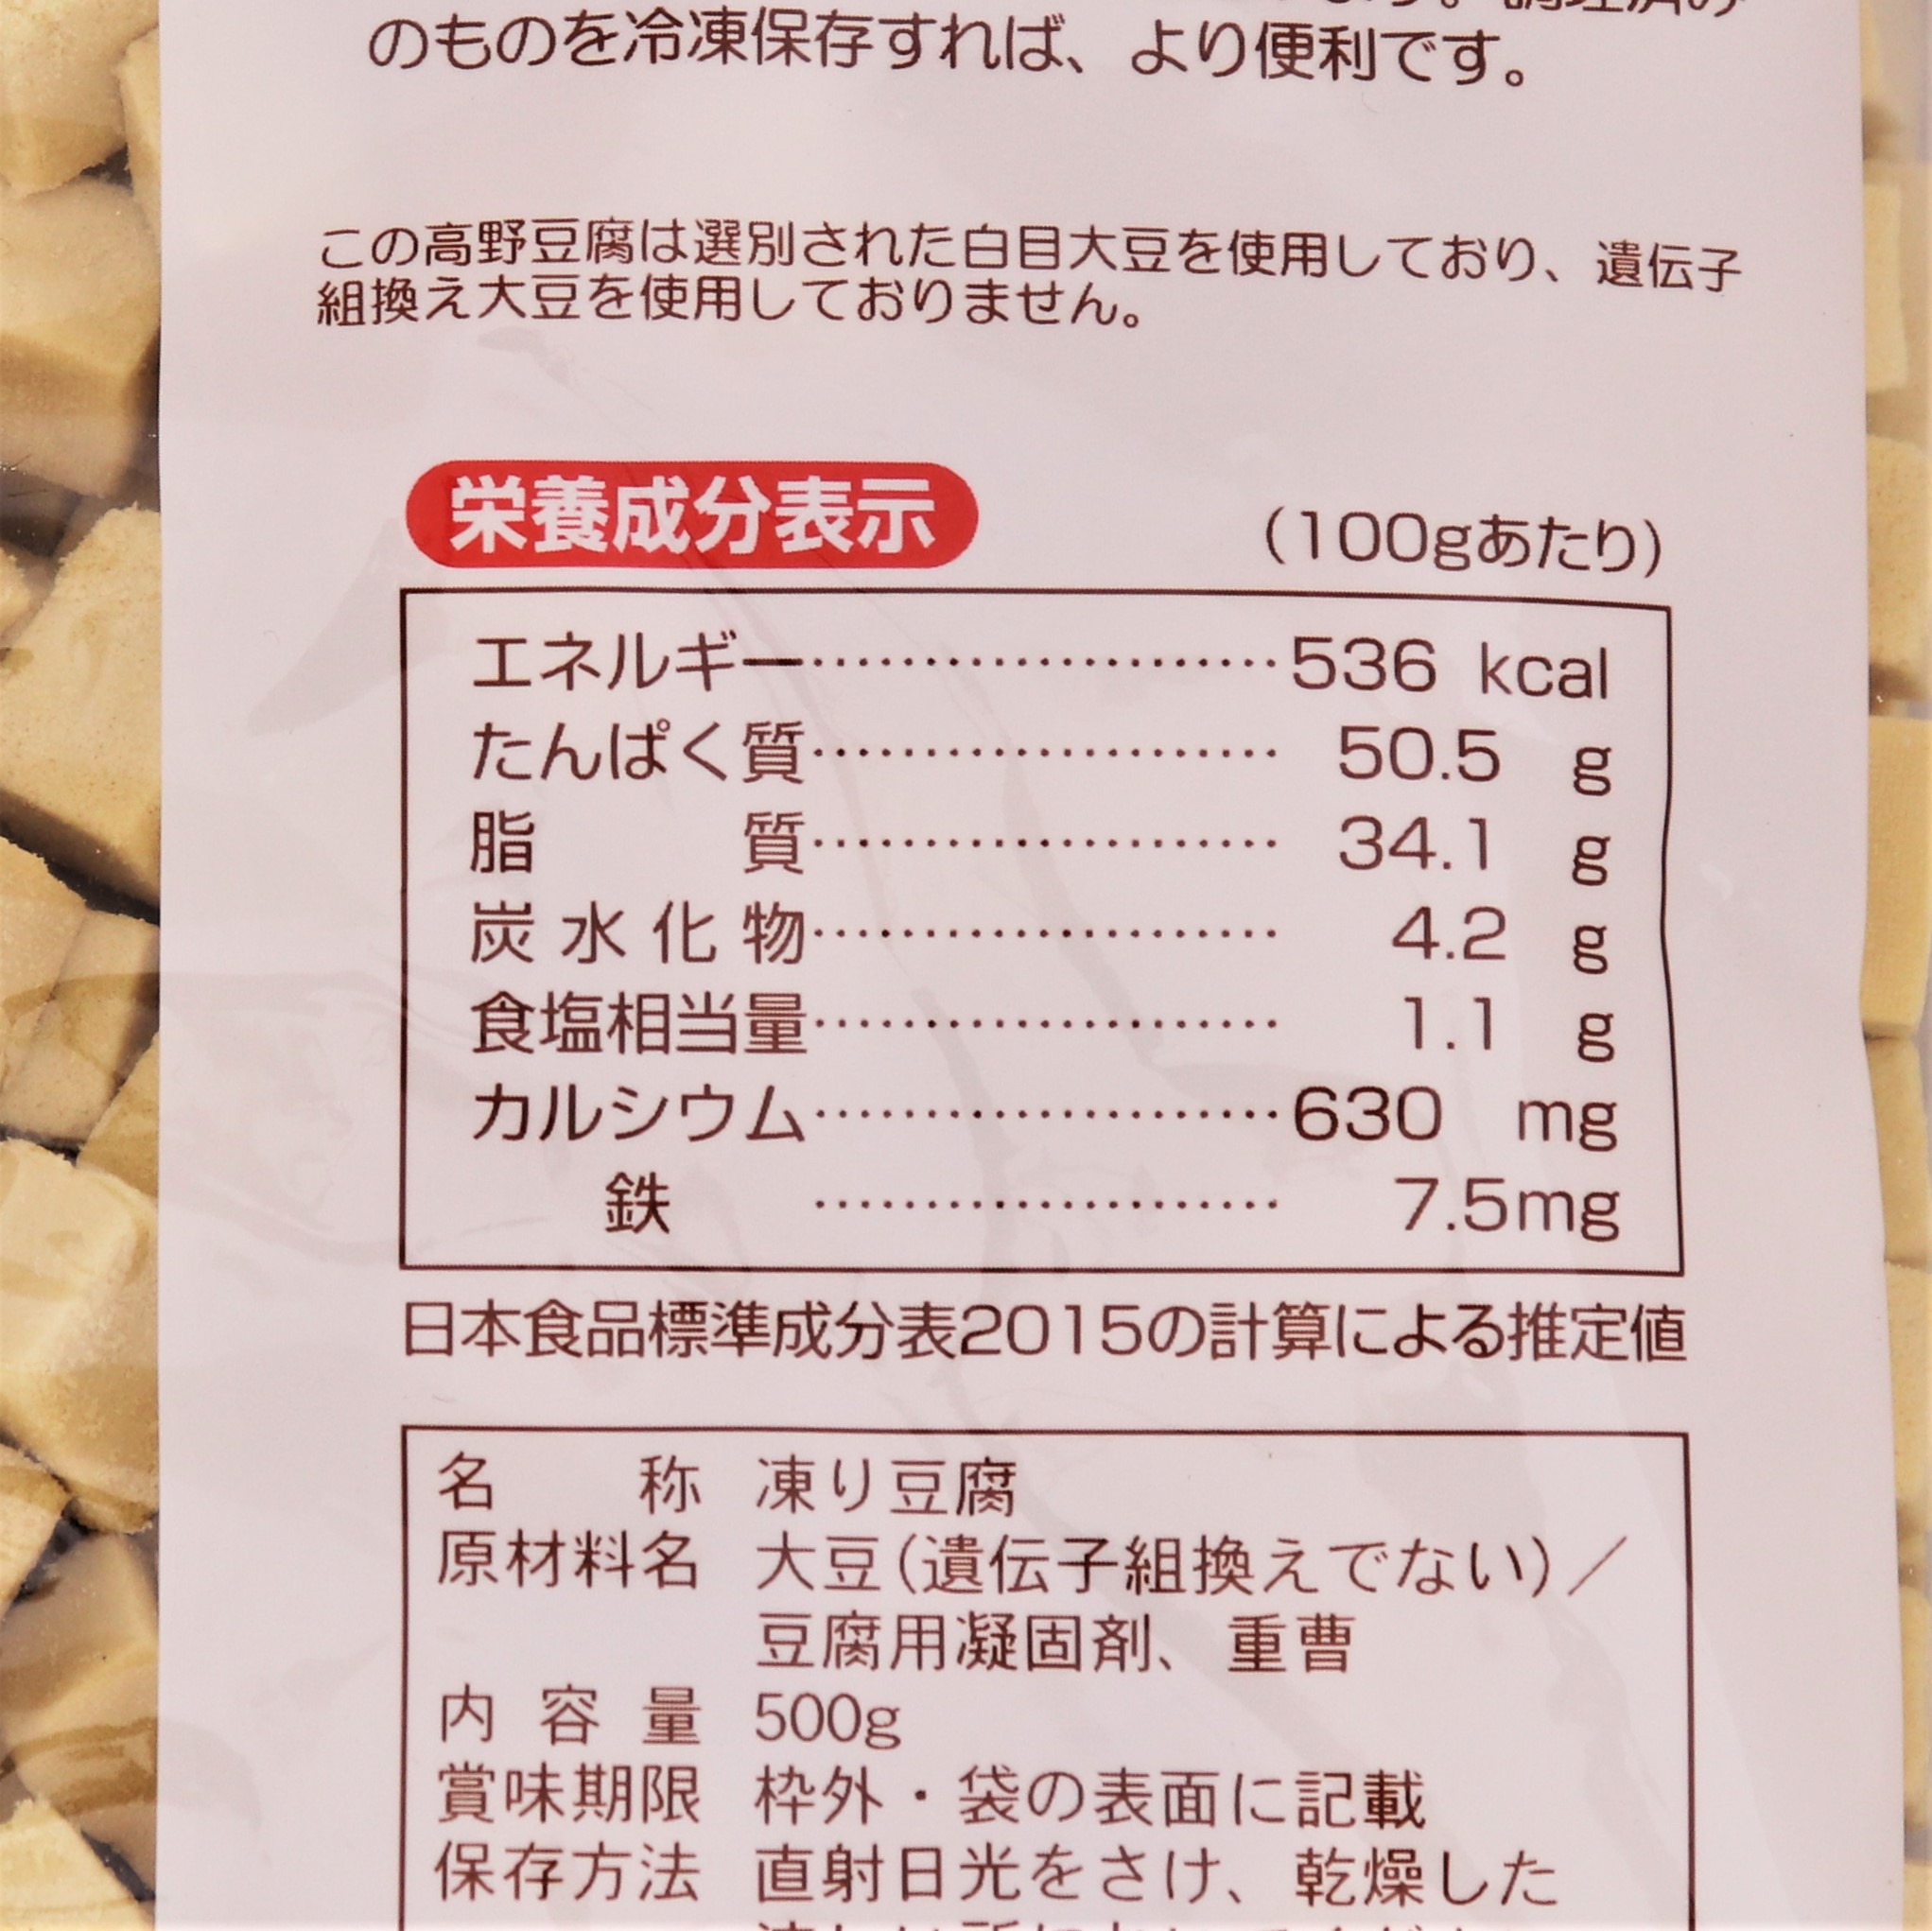 【業務用】登喜和冷凍食品 鶴羽二重 こうや豆腐1/20サイコロカット 500g